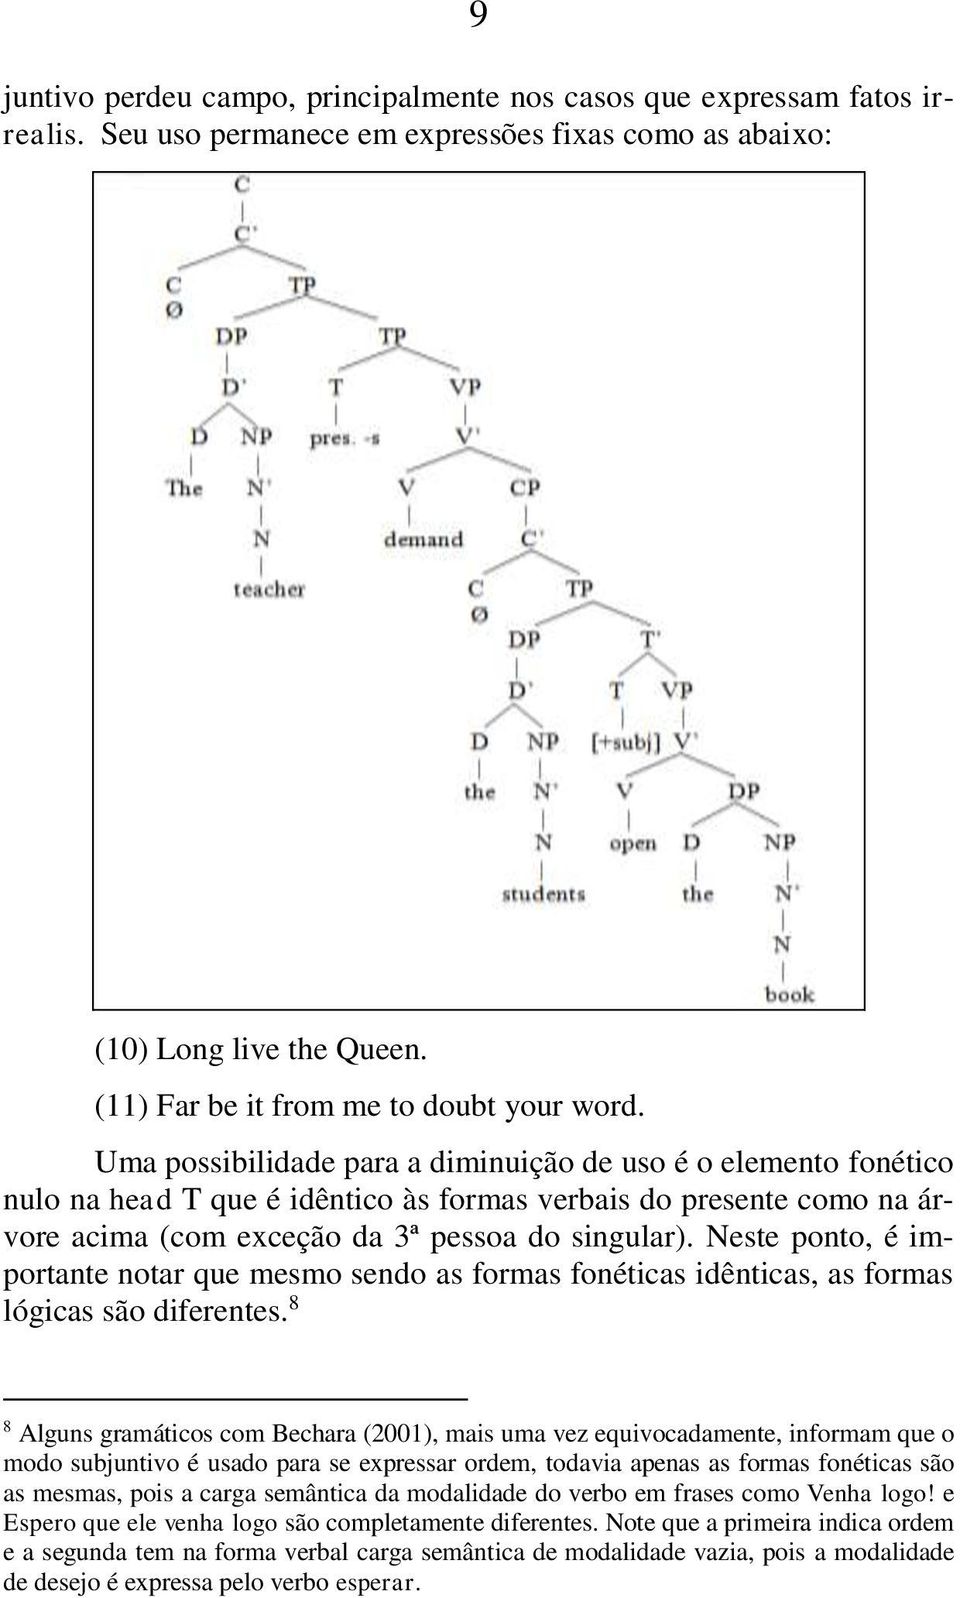 Uma possibilidade para a diminuição de uso é o elemento fonético nulo na head T que é idêntico às formas verbais do presente como na árvore acima (com exceção da 3ª pessoa do singular).